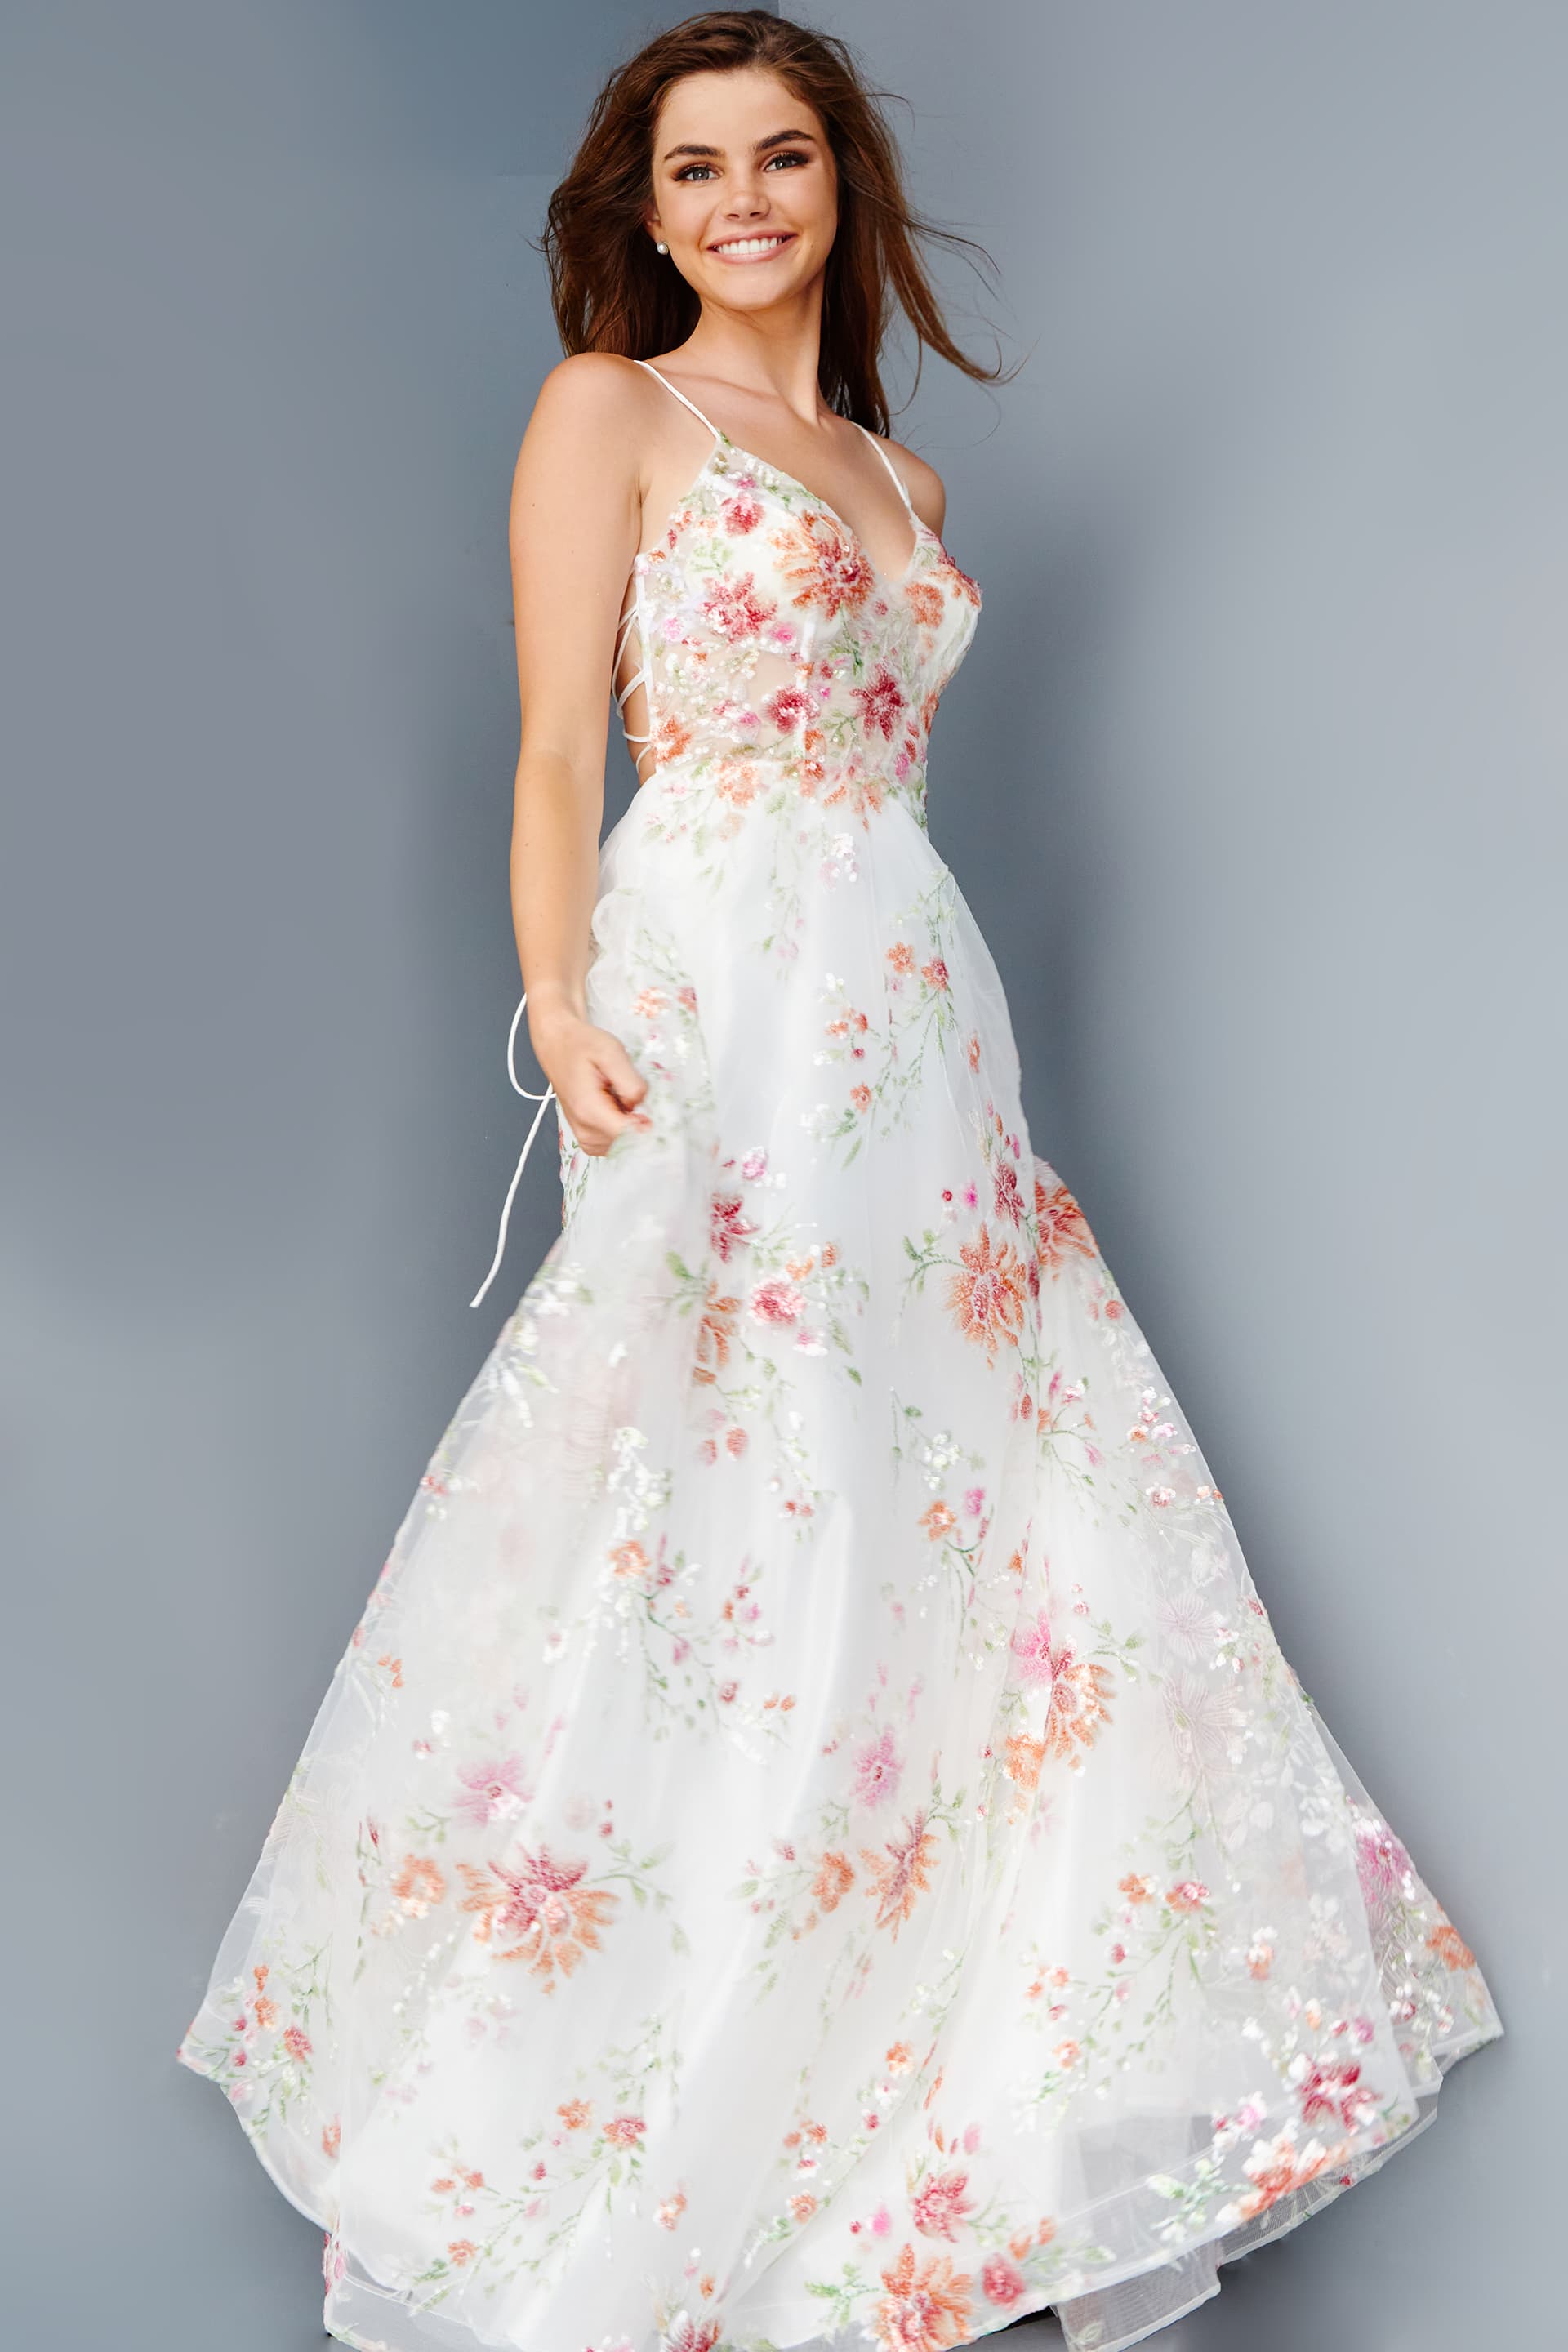 JVN23212 Off White Floral Embellished A Line Prom Dress - JVN